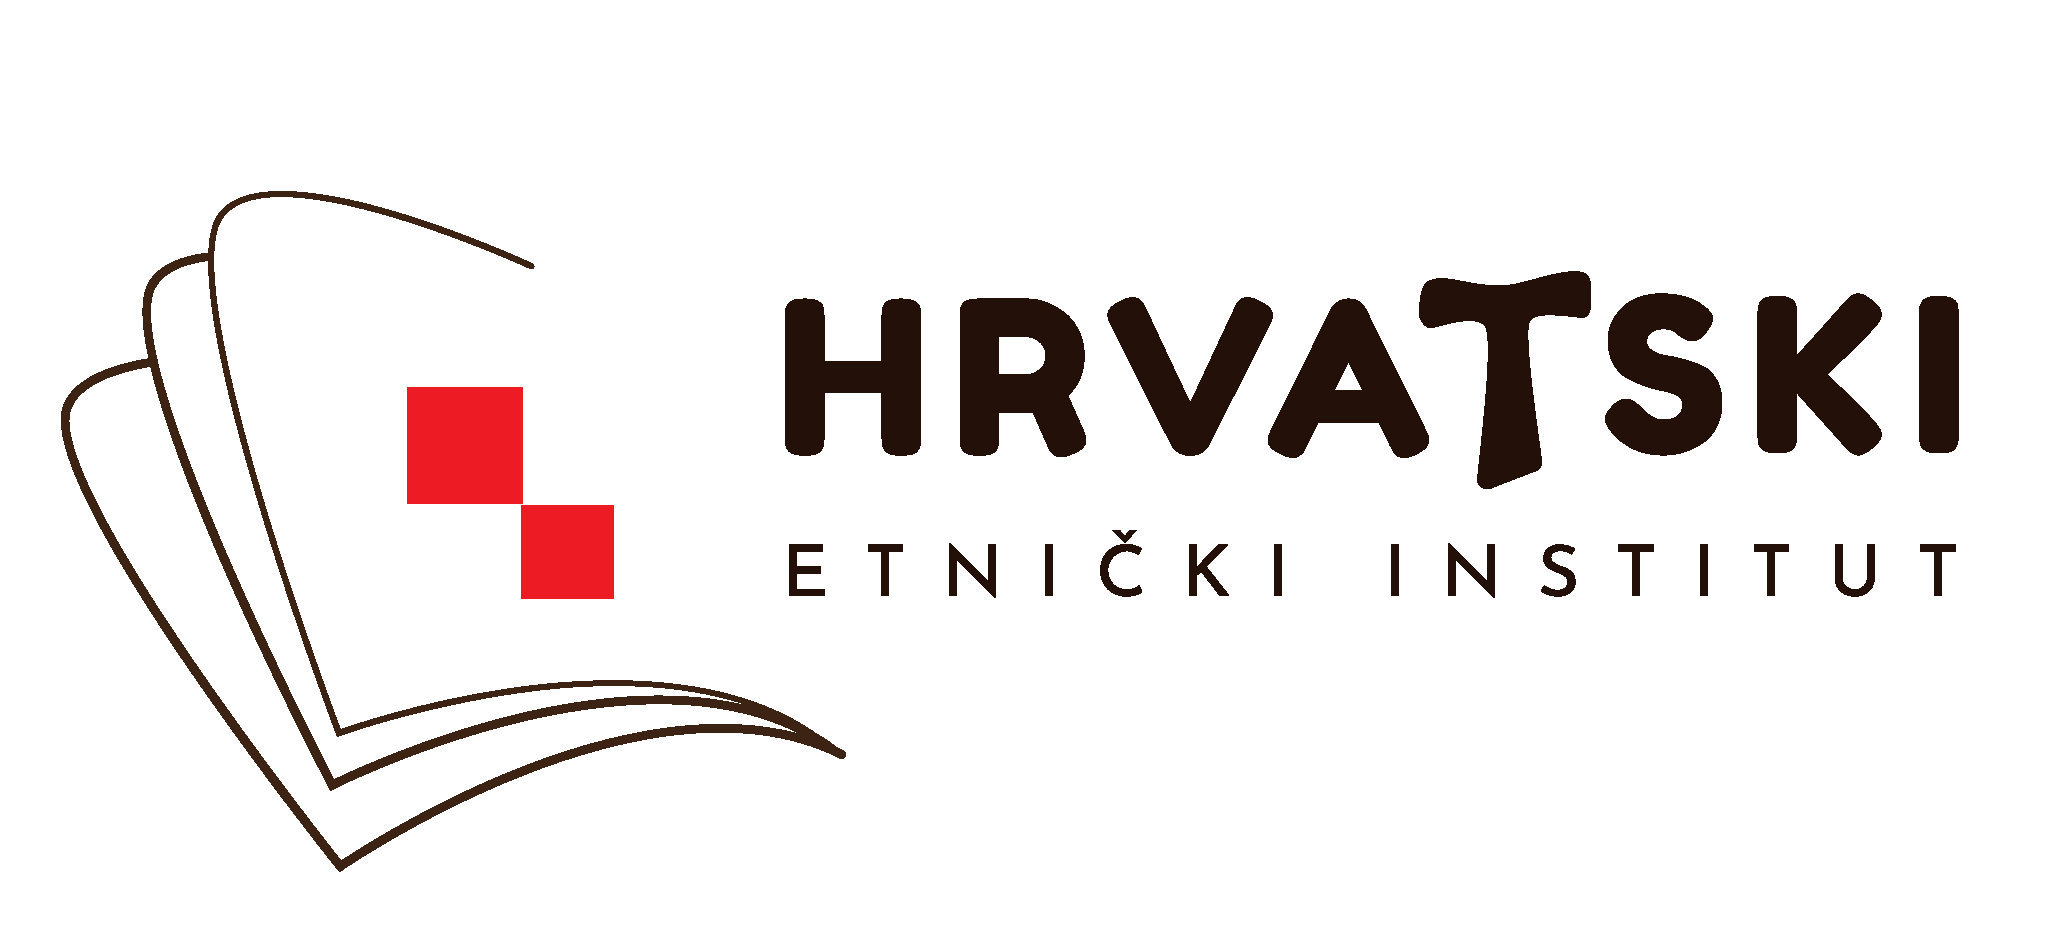 Hrvatski etnički institut